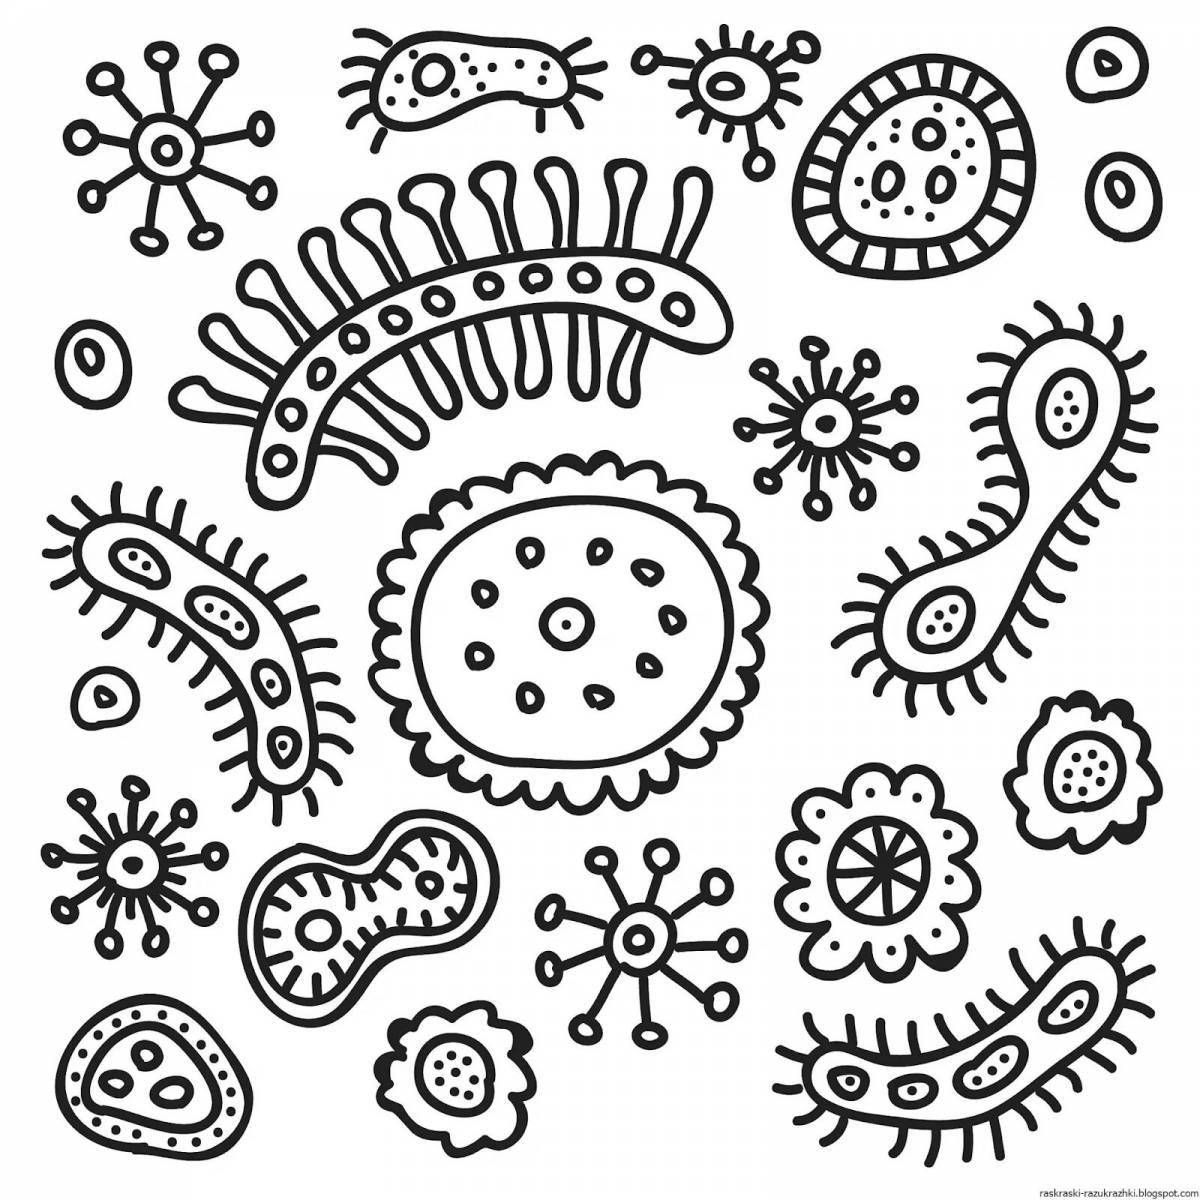 Радостная страница раскраски микробов и бактерий